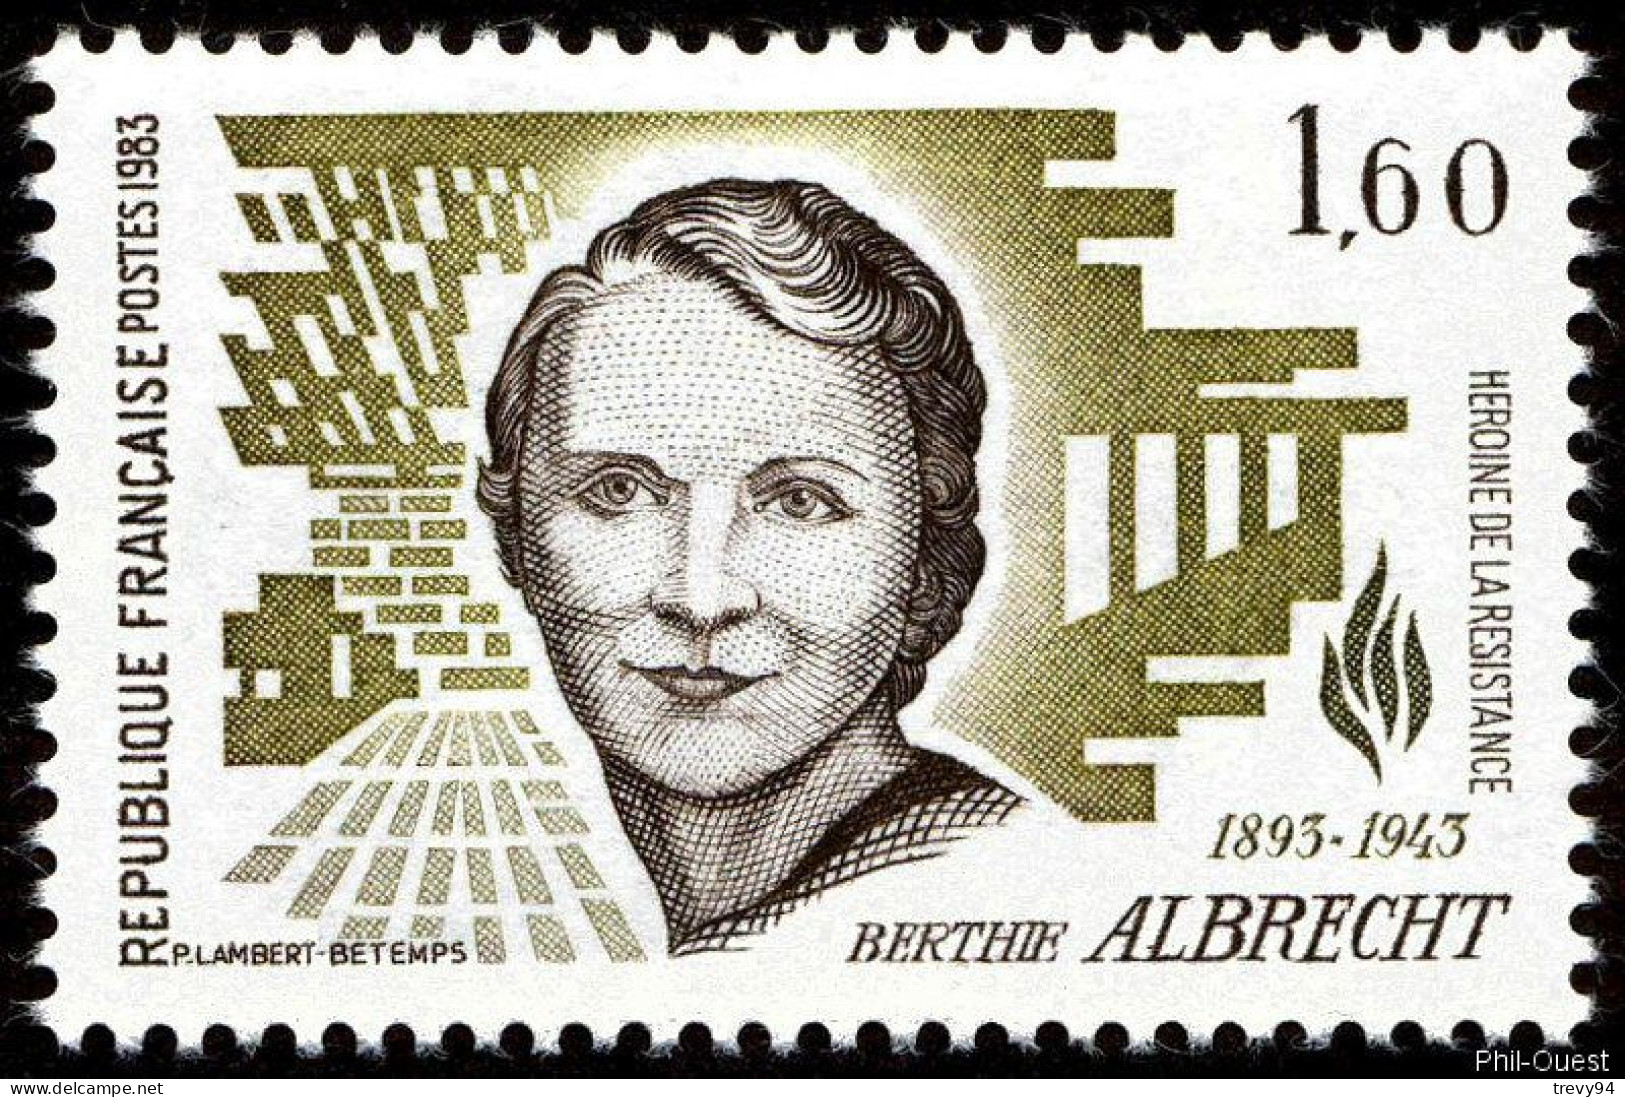 Timbre De 1983 - Héroïnes De La Résistance Berthie Albrecht 1893-1943 - Yvert & Tellier N° 2294 - Unused Stamps